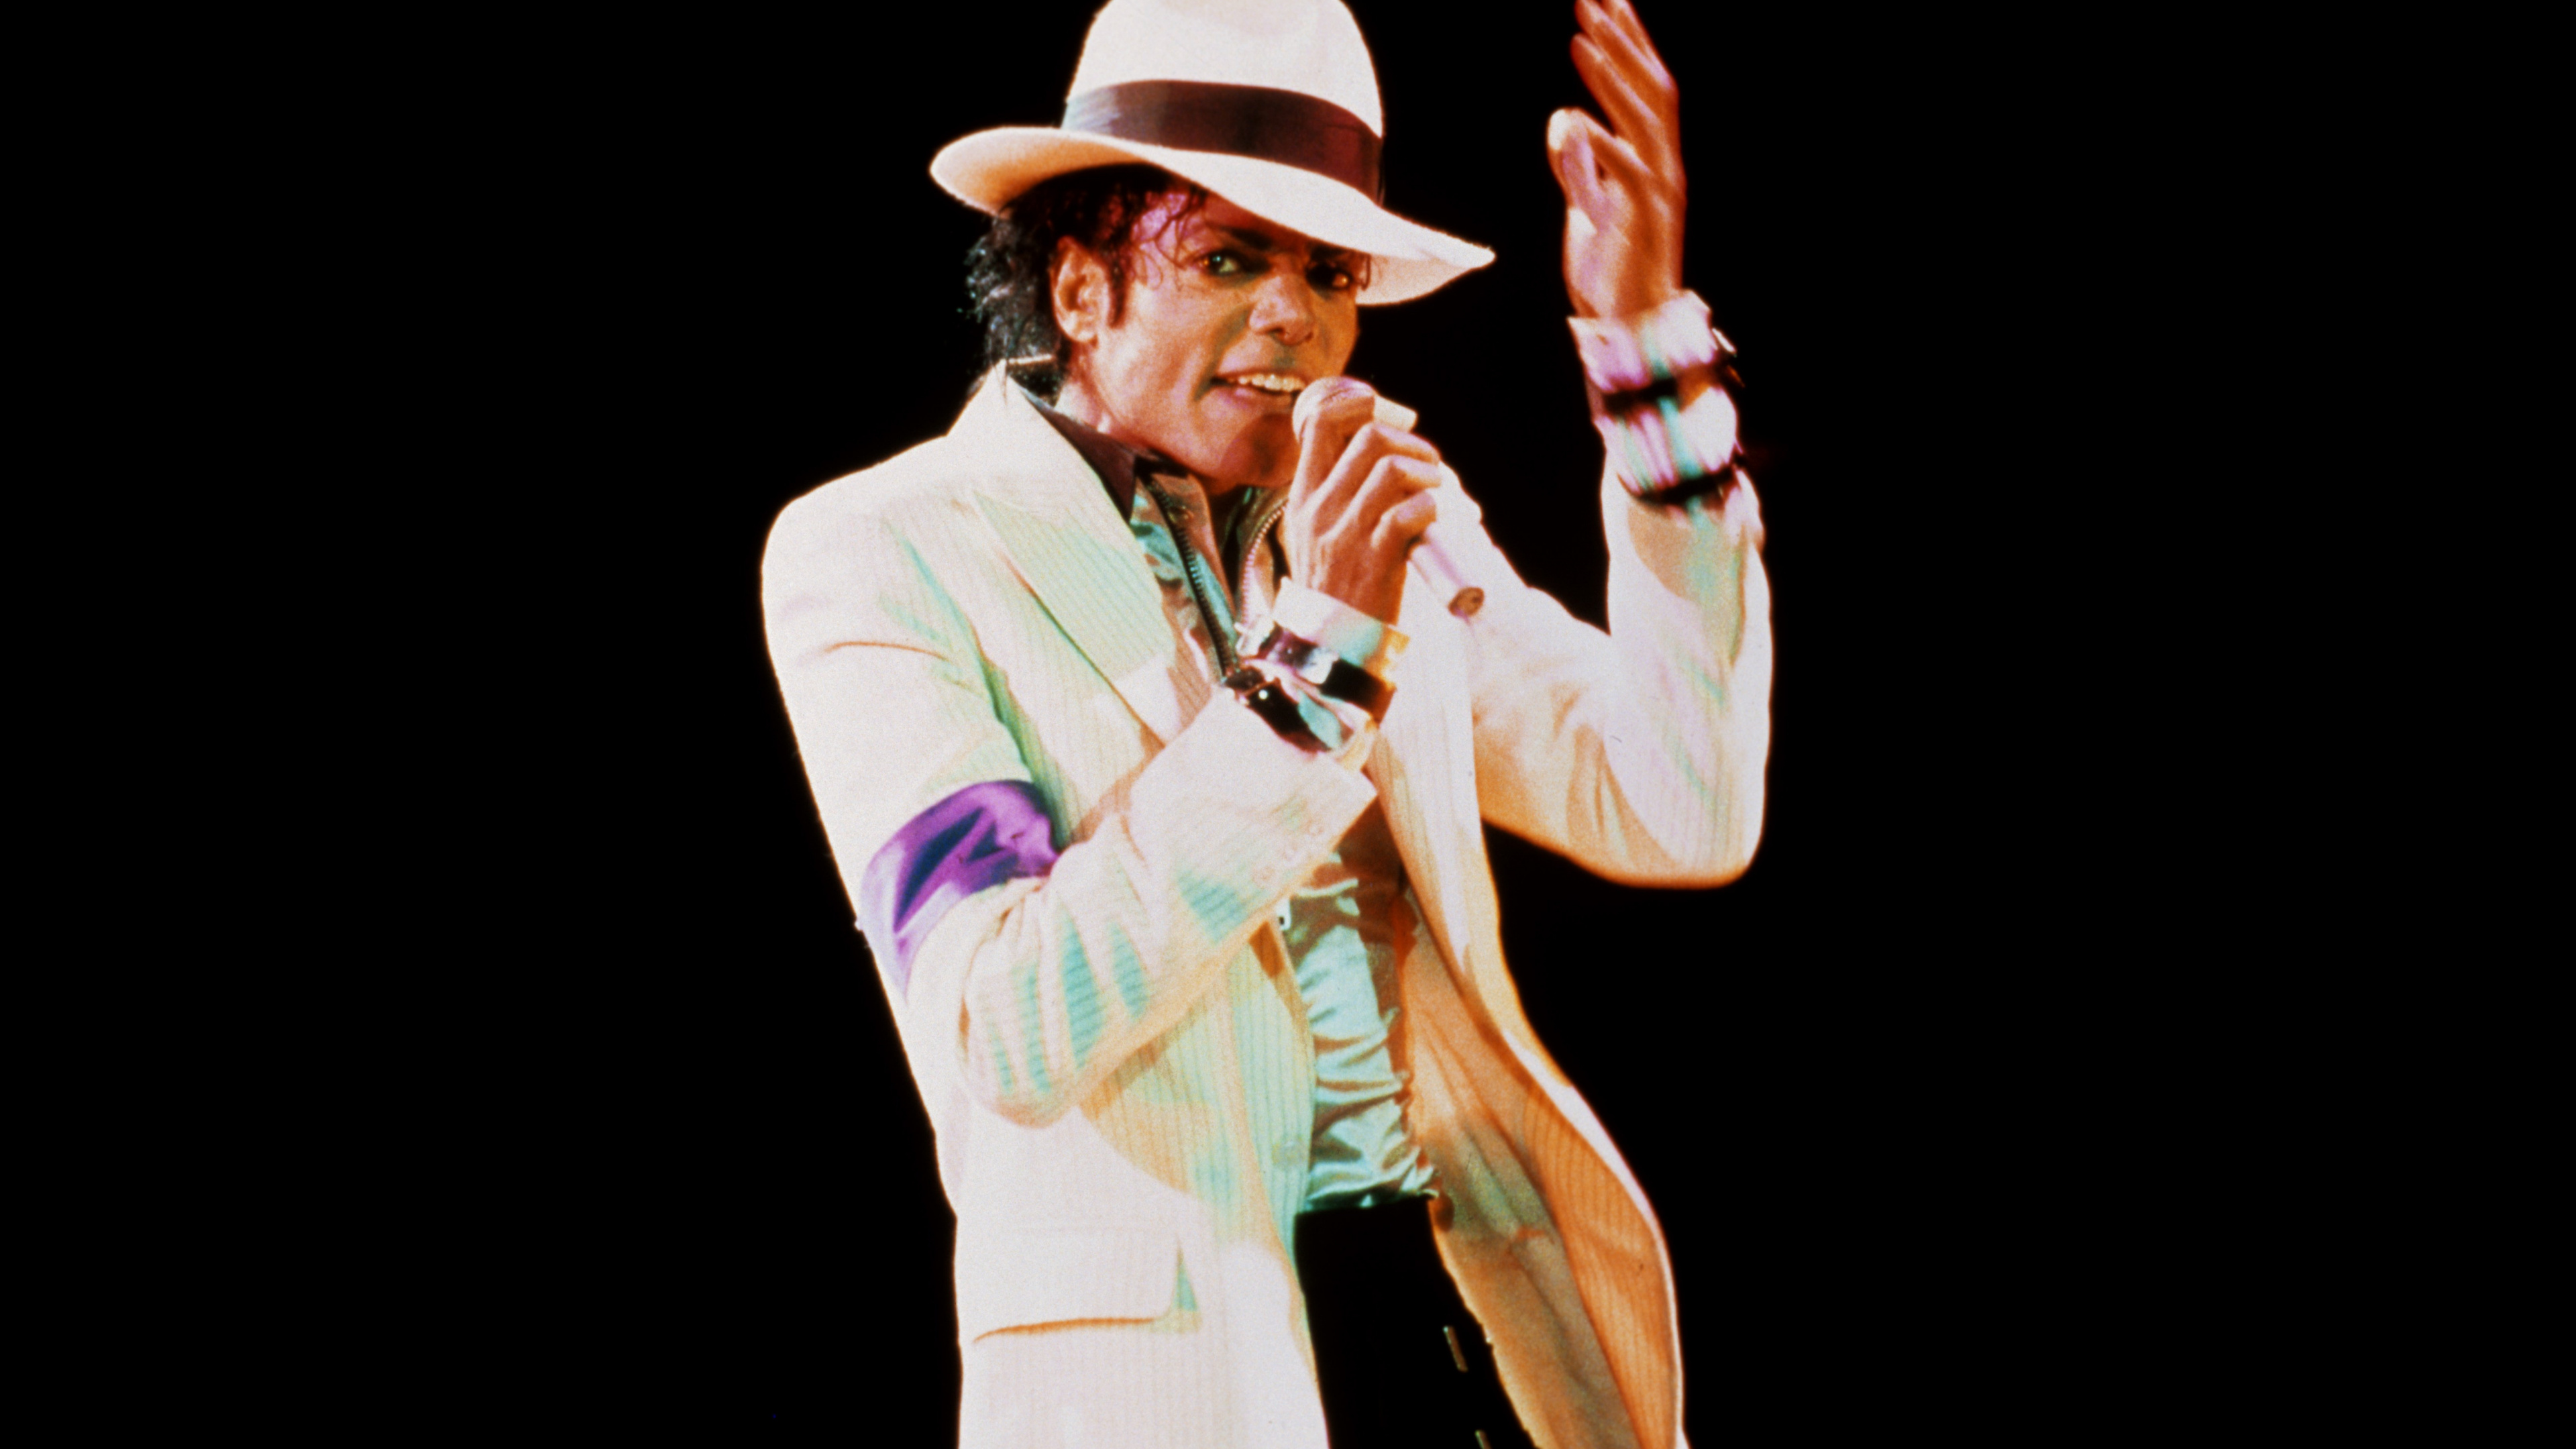 Michael Jackson, Leistung, Musik Künstler, Darstellende Kunst, Veranstaltung. Wallpaper in 3840x2160 Resolution